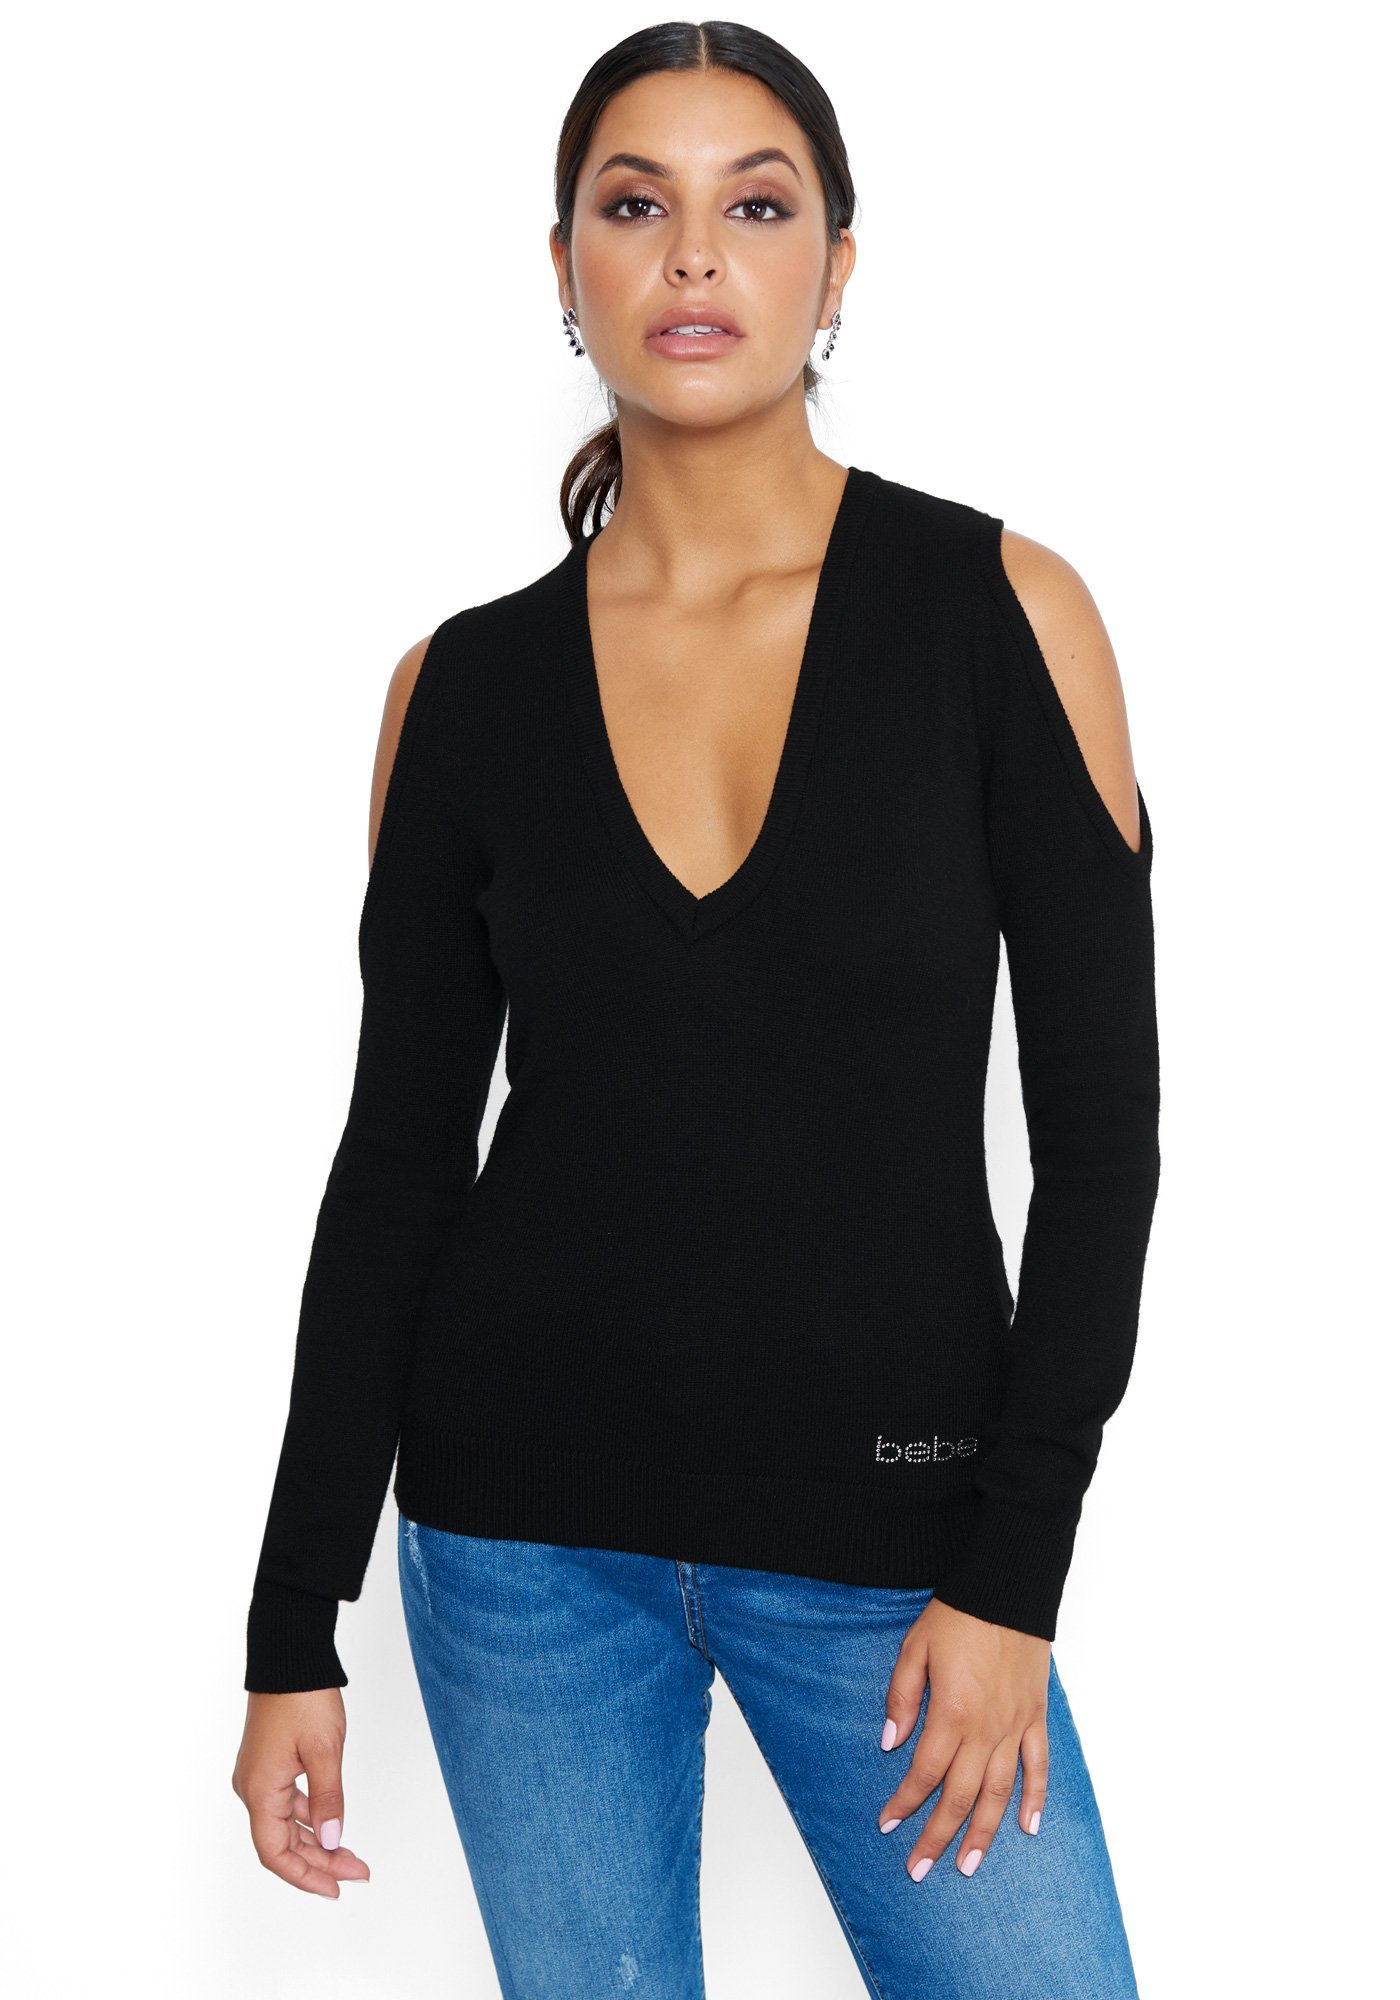 Bebe Women's Open Back Sweater, Size XS in Black Silk/Viscose/Nylon